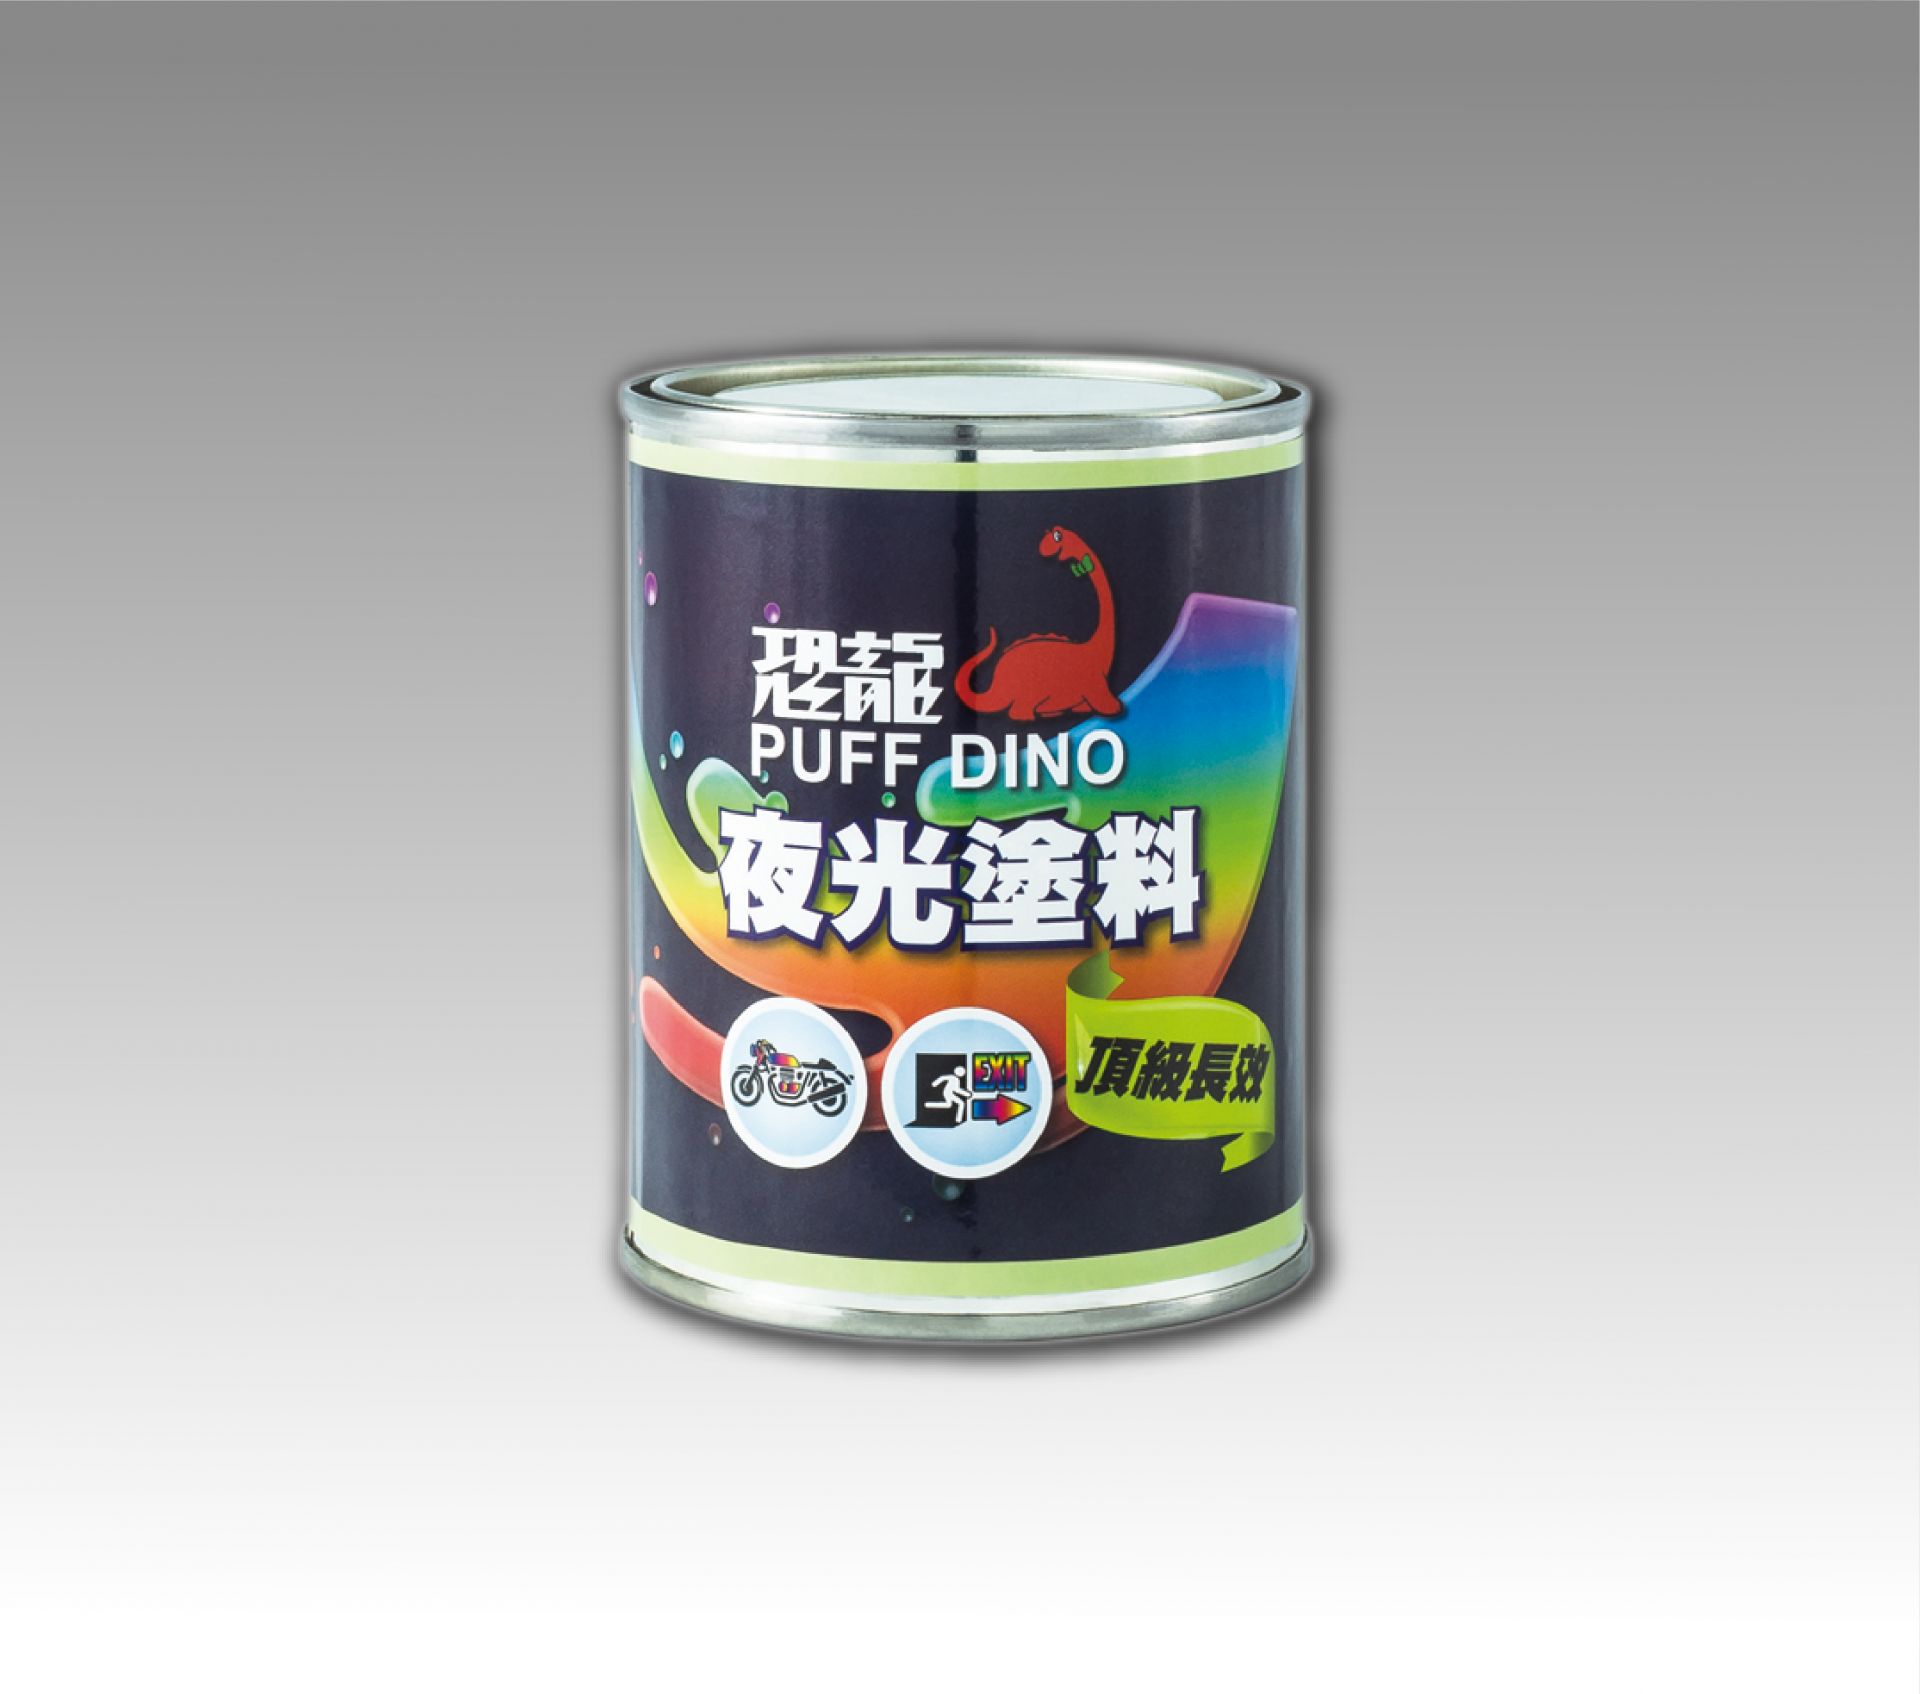 恐龍 提供最適用的噴霧罐產品給專業使用者 嘉沅貿易有限公司 嘉偉行銷有限公司 嘉博貿易有限公司